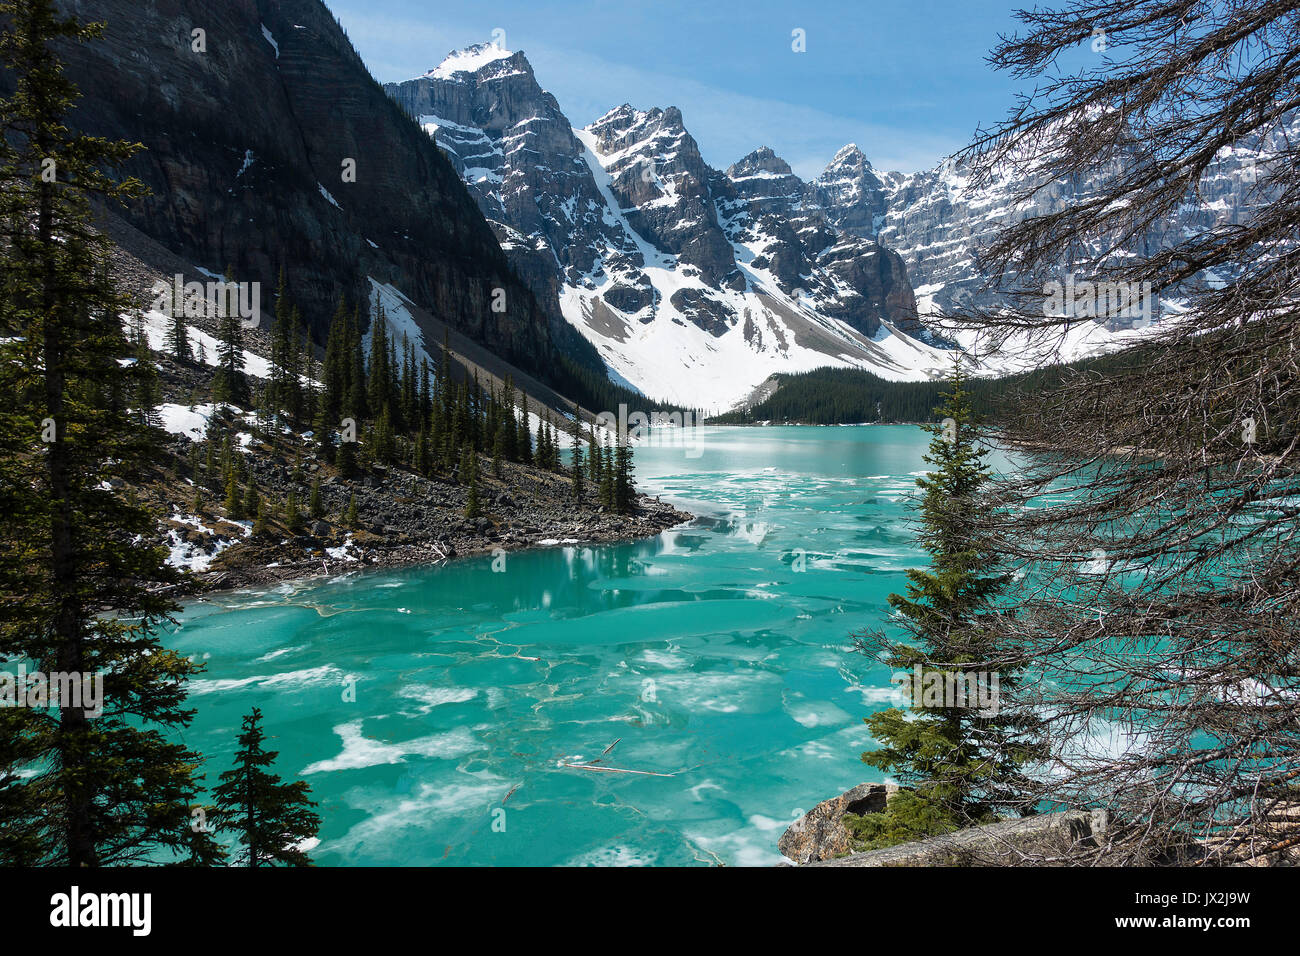 Les magnifiques eaux vert de Lac Moraine, dans le parc national Banff Canadian Rockies Alberta Canada Banque D'Images